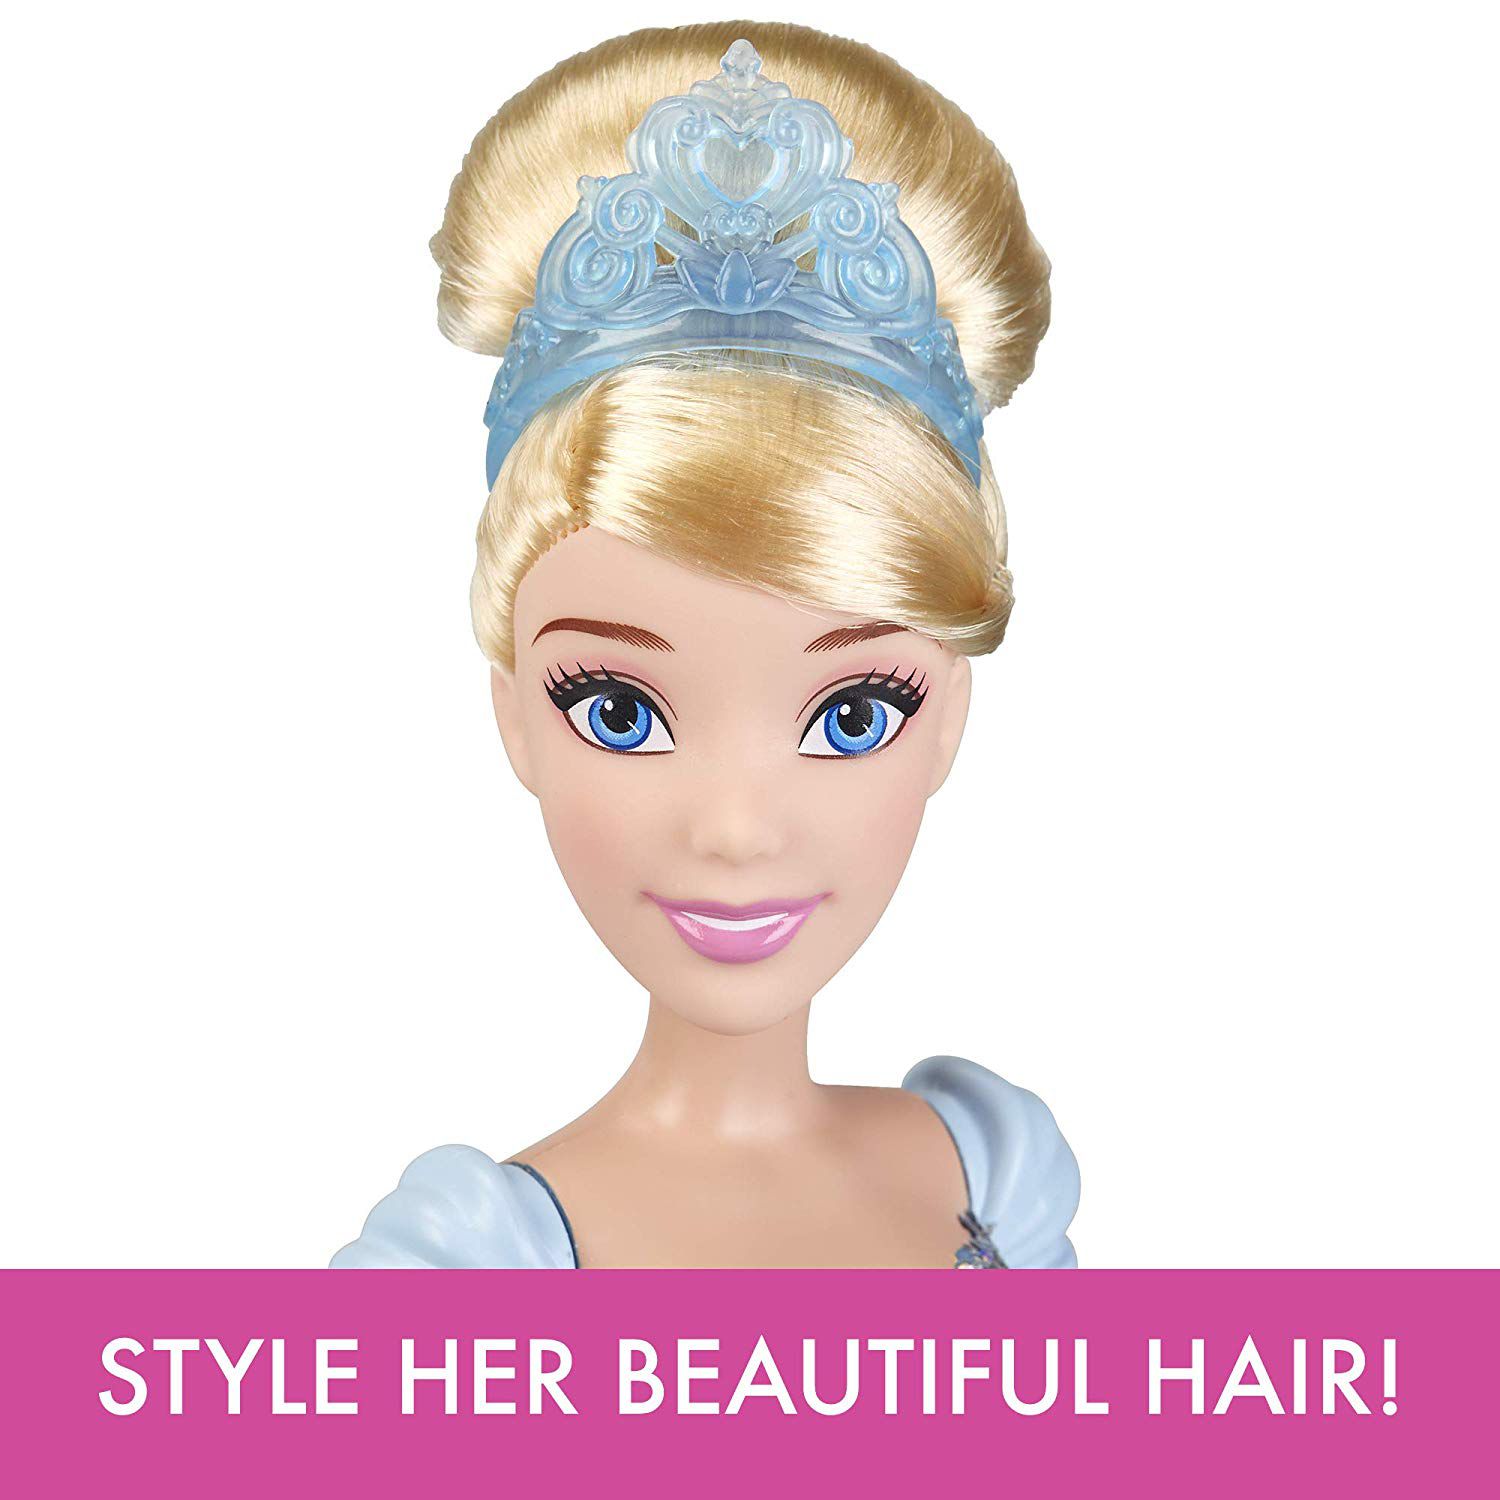 Boneca Disney Princess Royal Shimmer Cinderella Oficial Licenciado